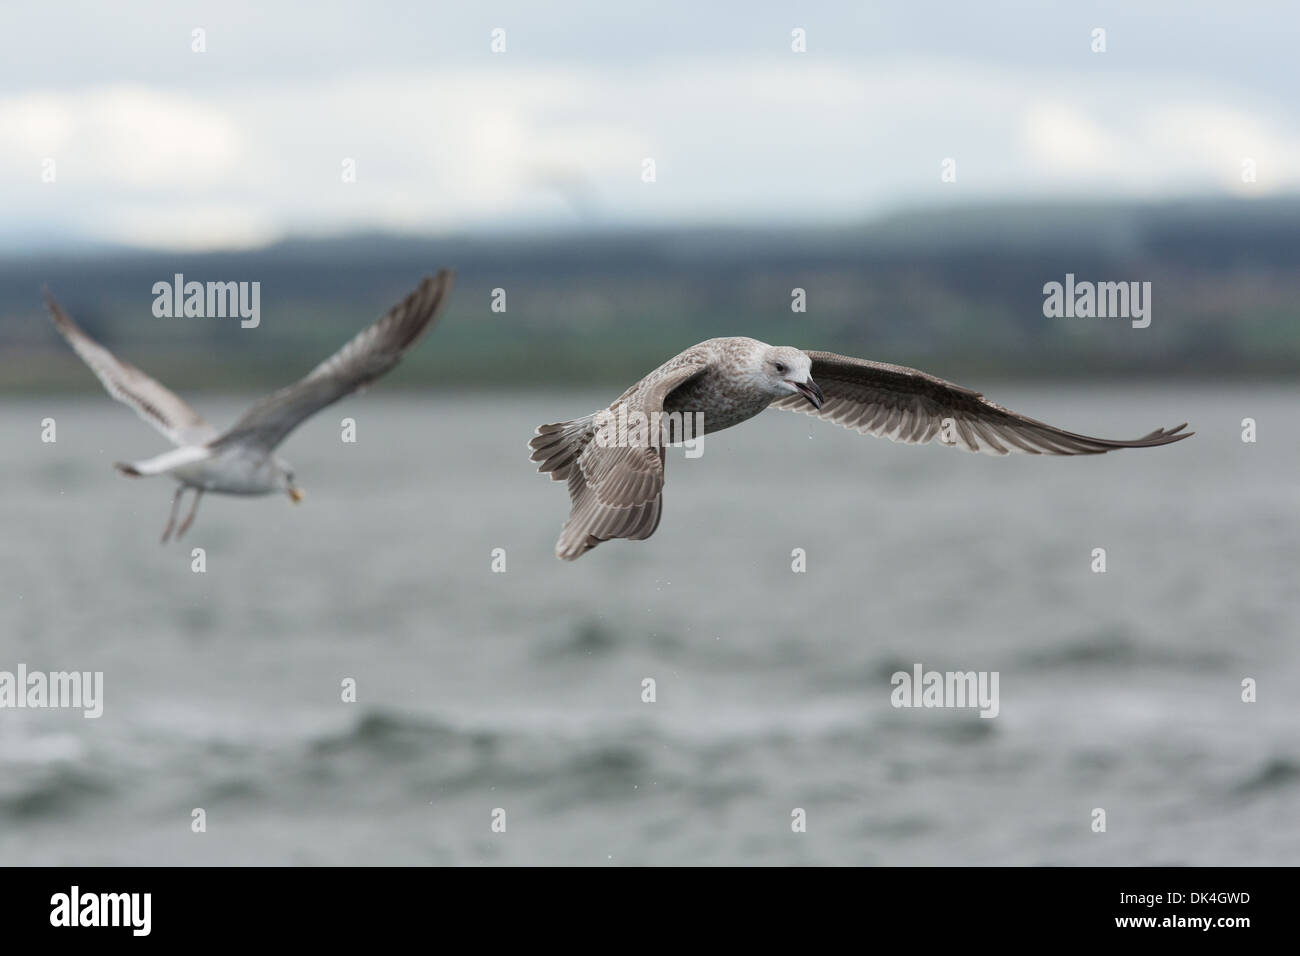 Herring gulls in flight. Stock Photo